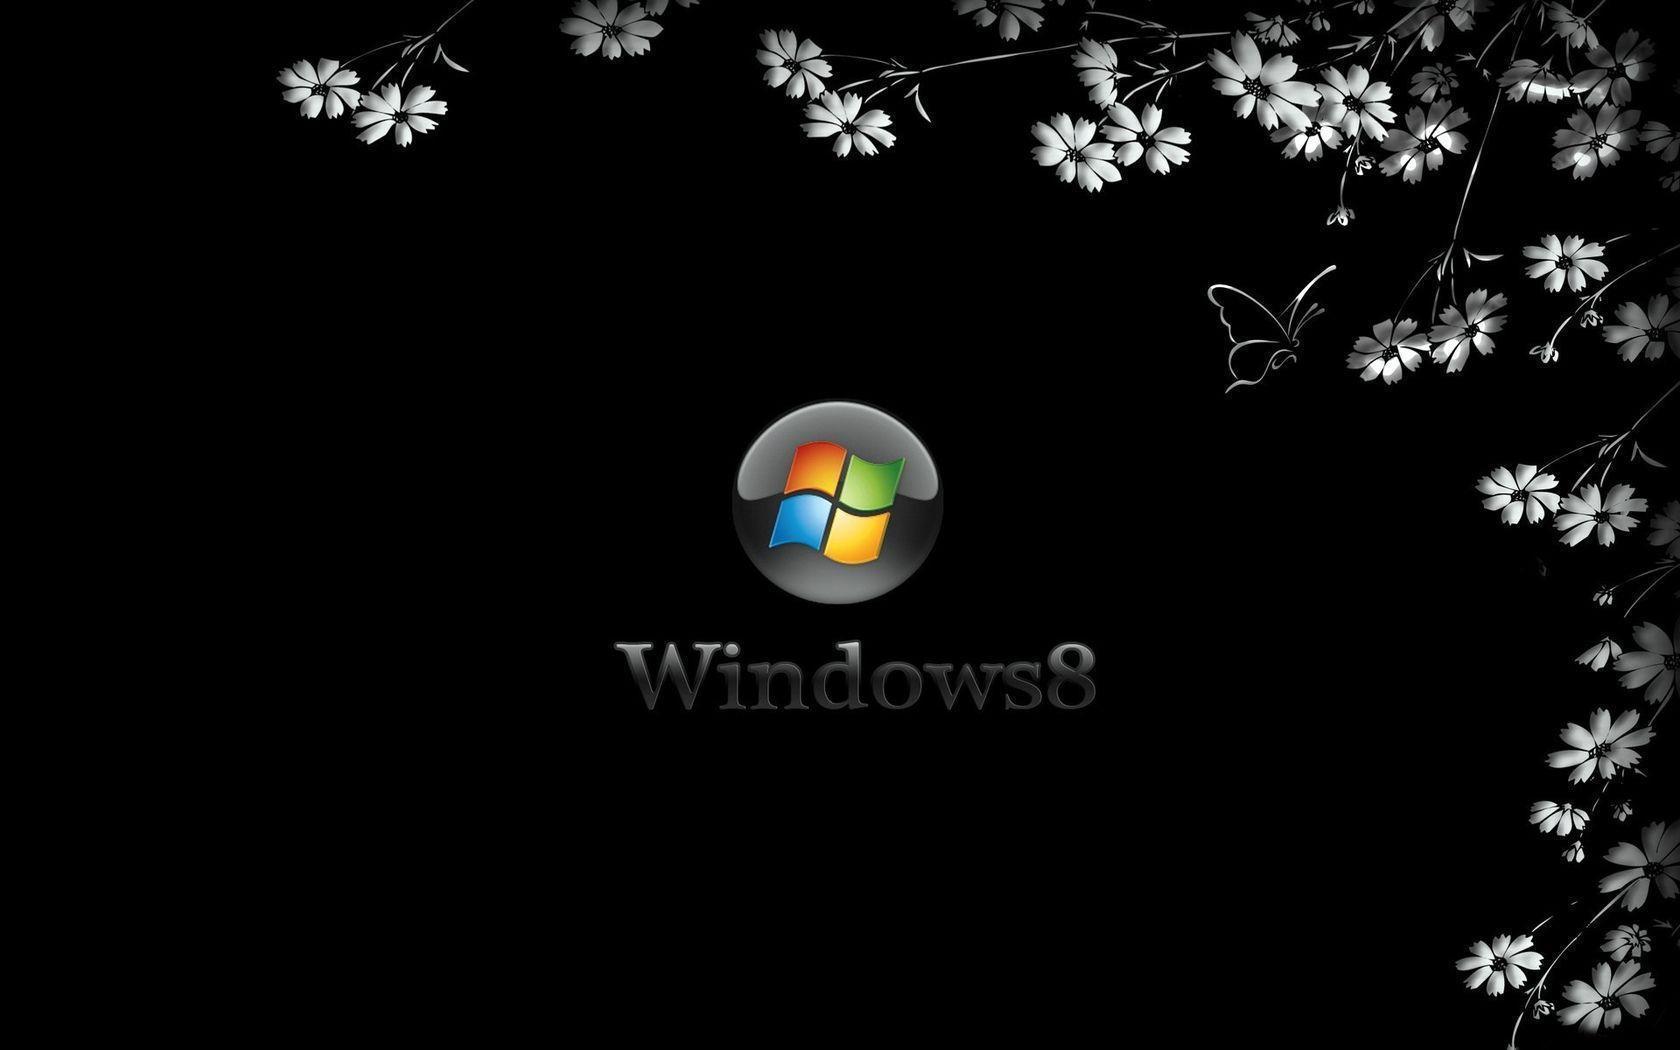 Windows 8 Flower Black Wallpaper. Widescreen Wallpaper. High